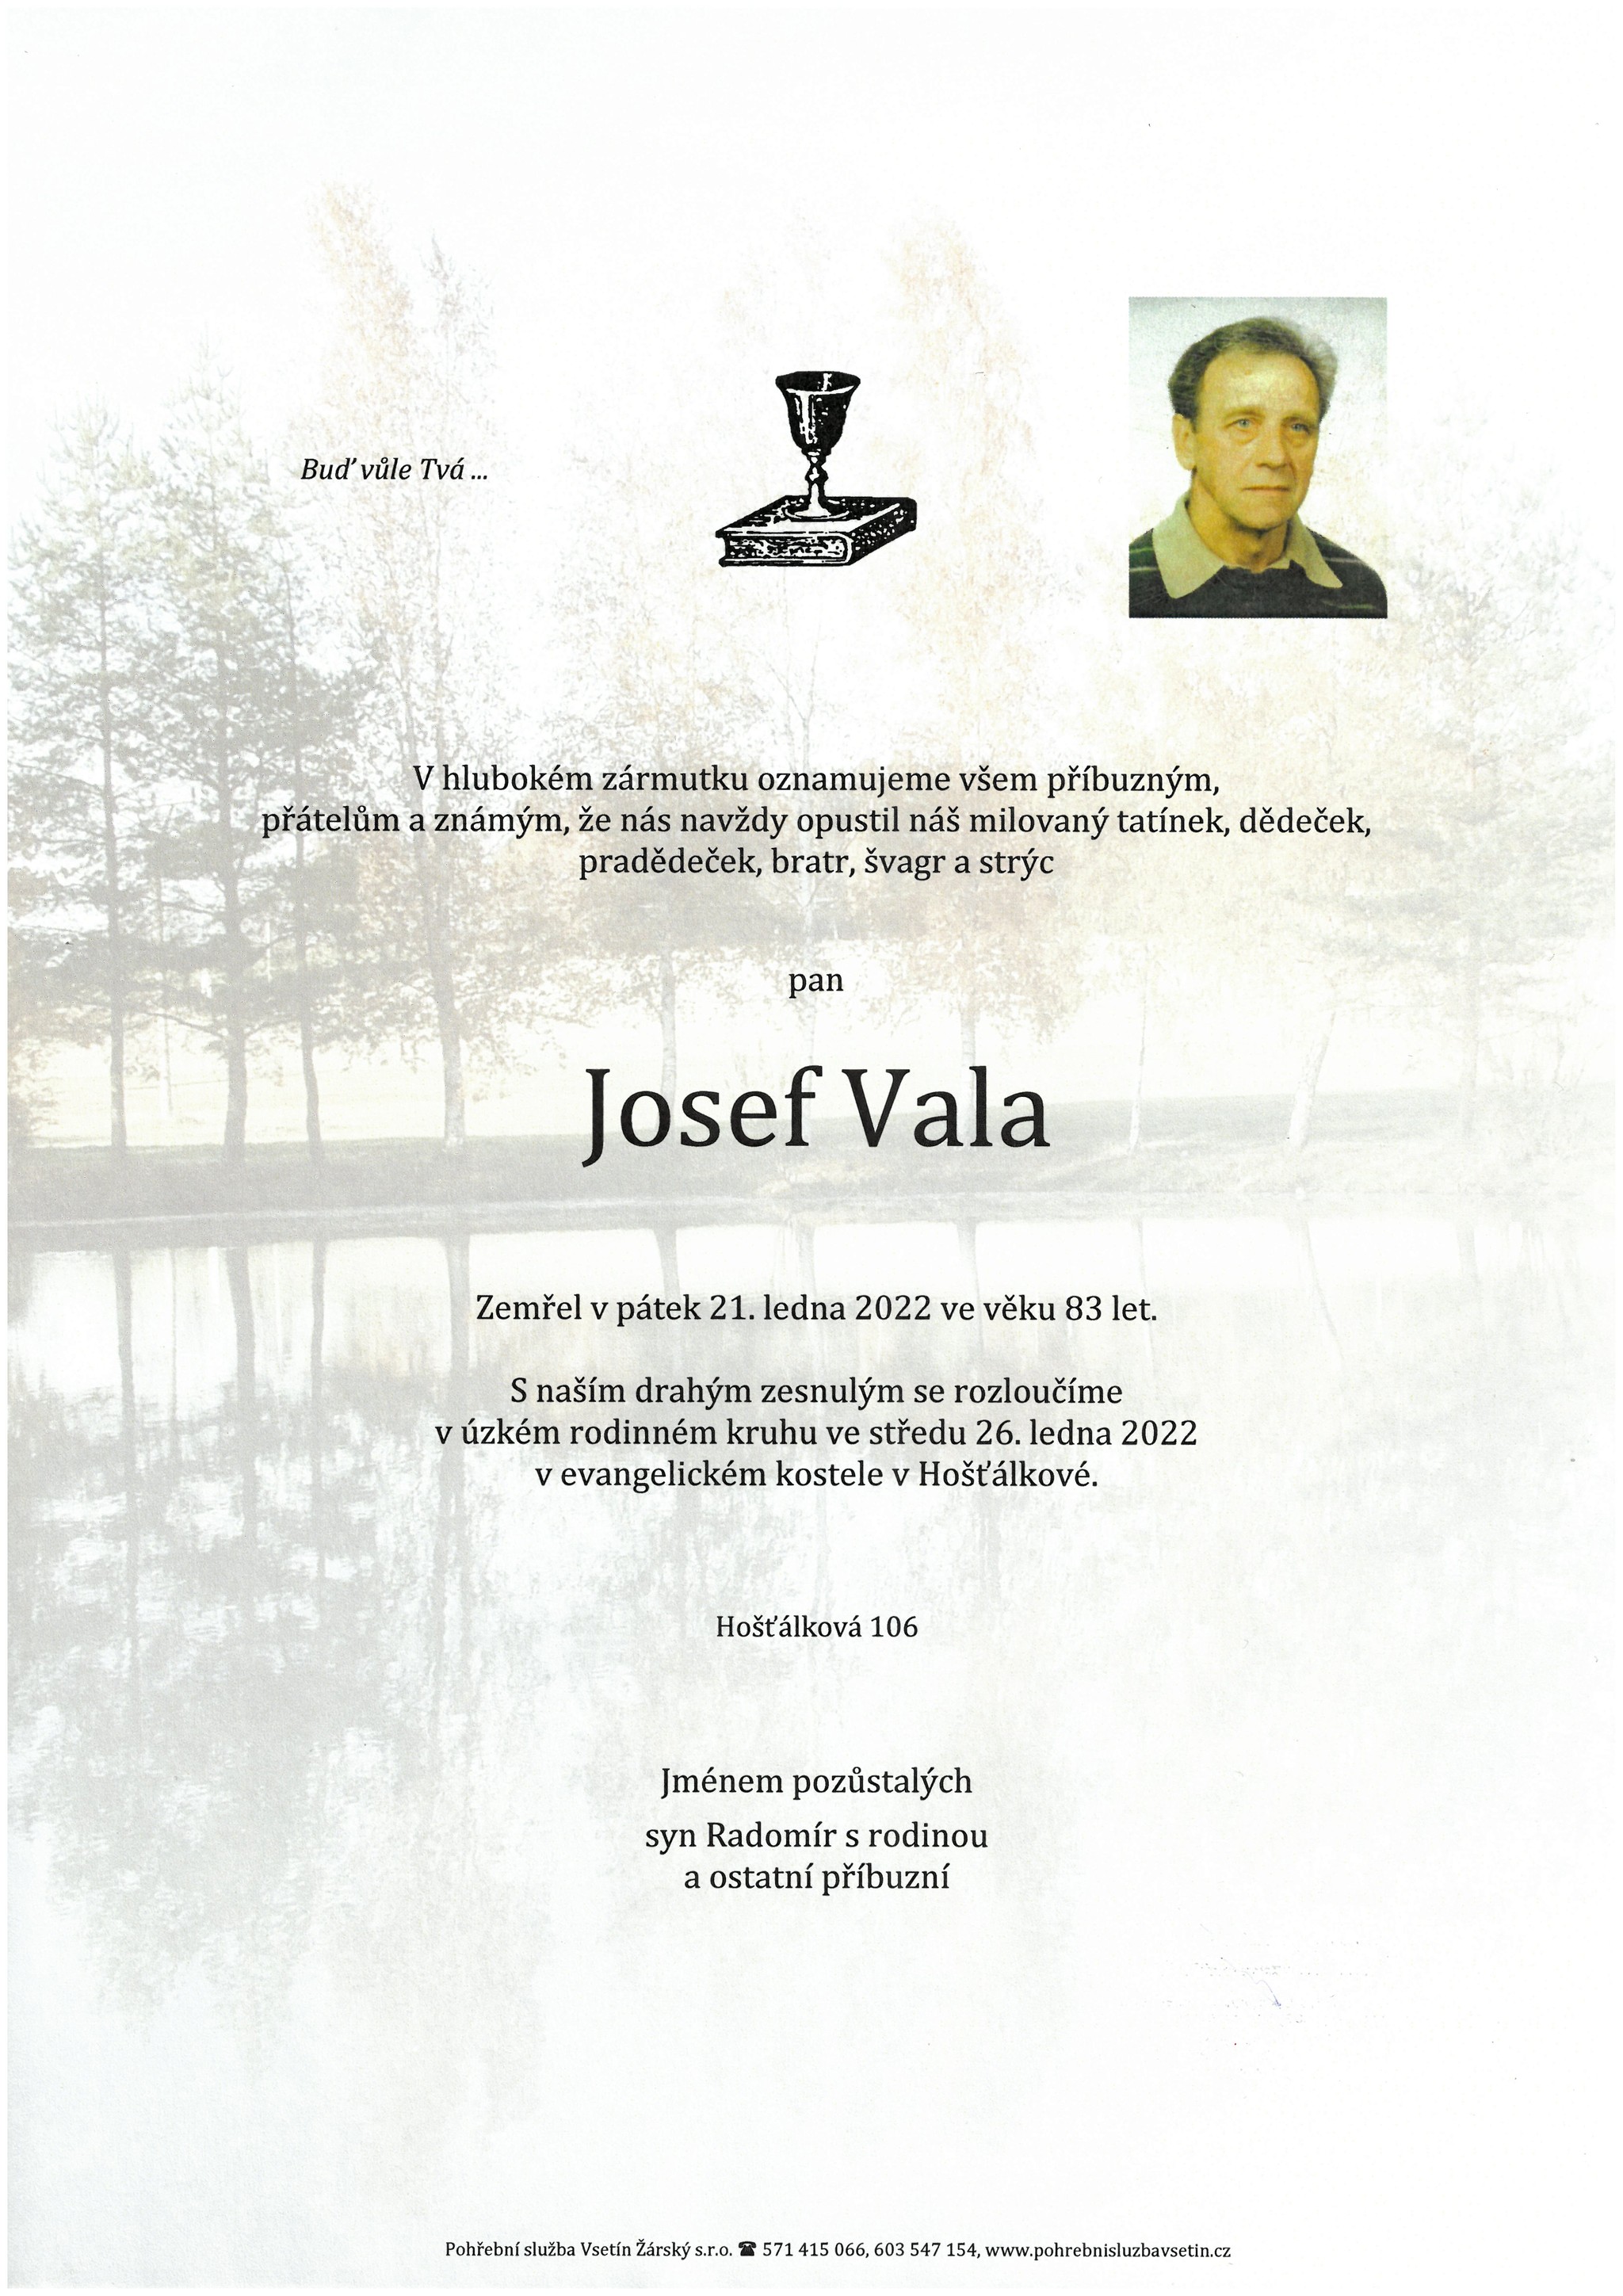 Josef Vala